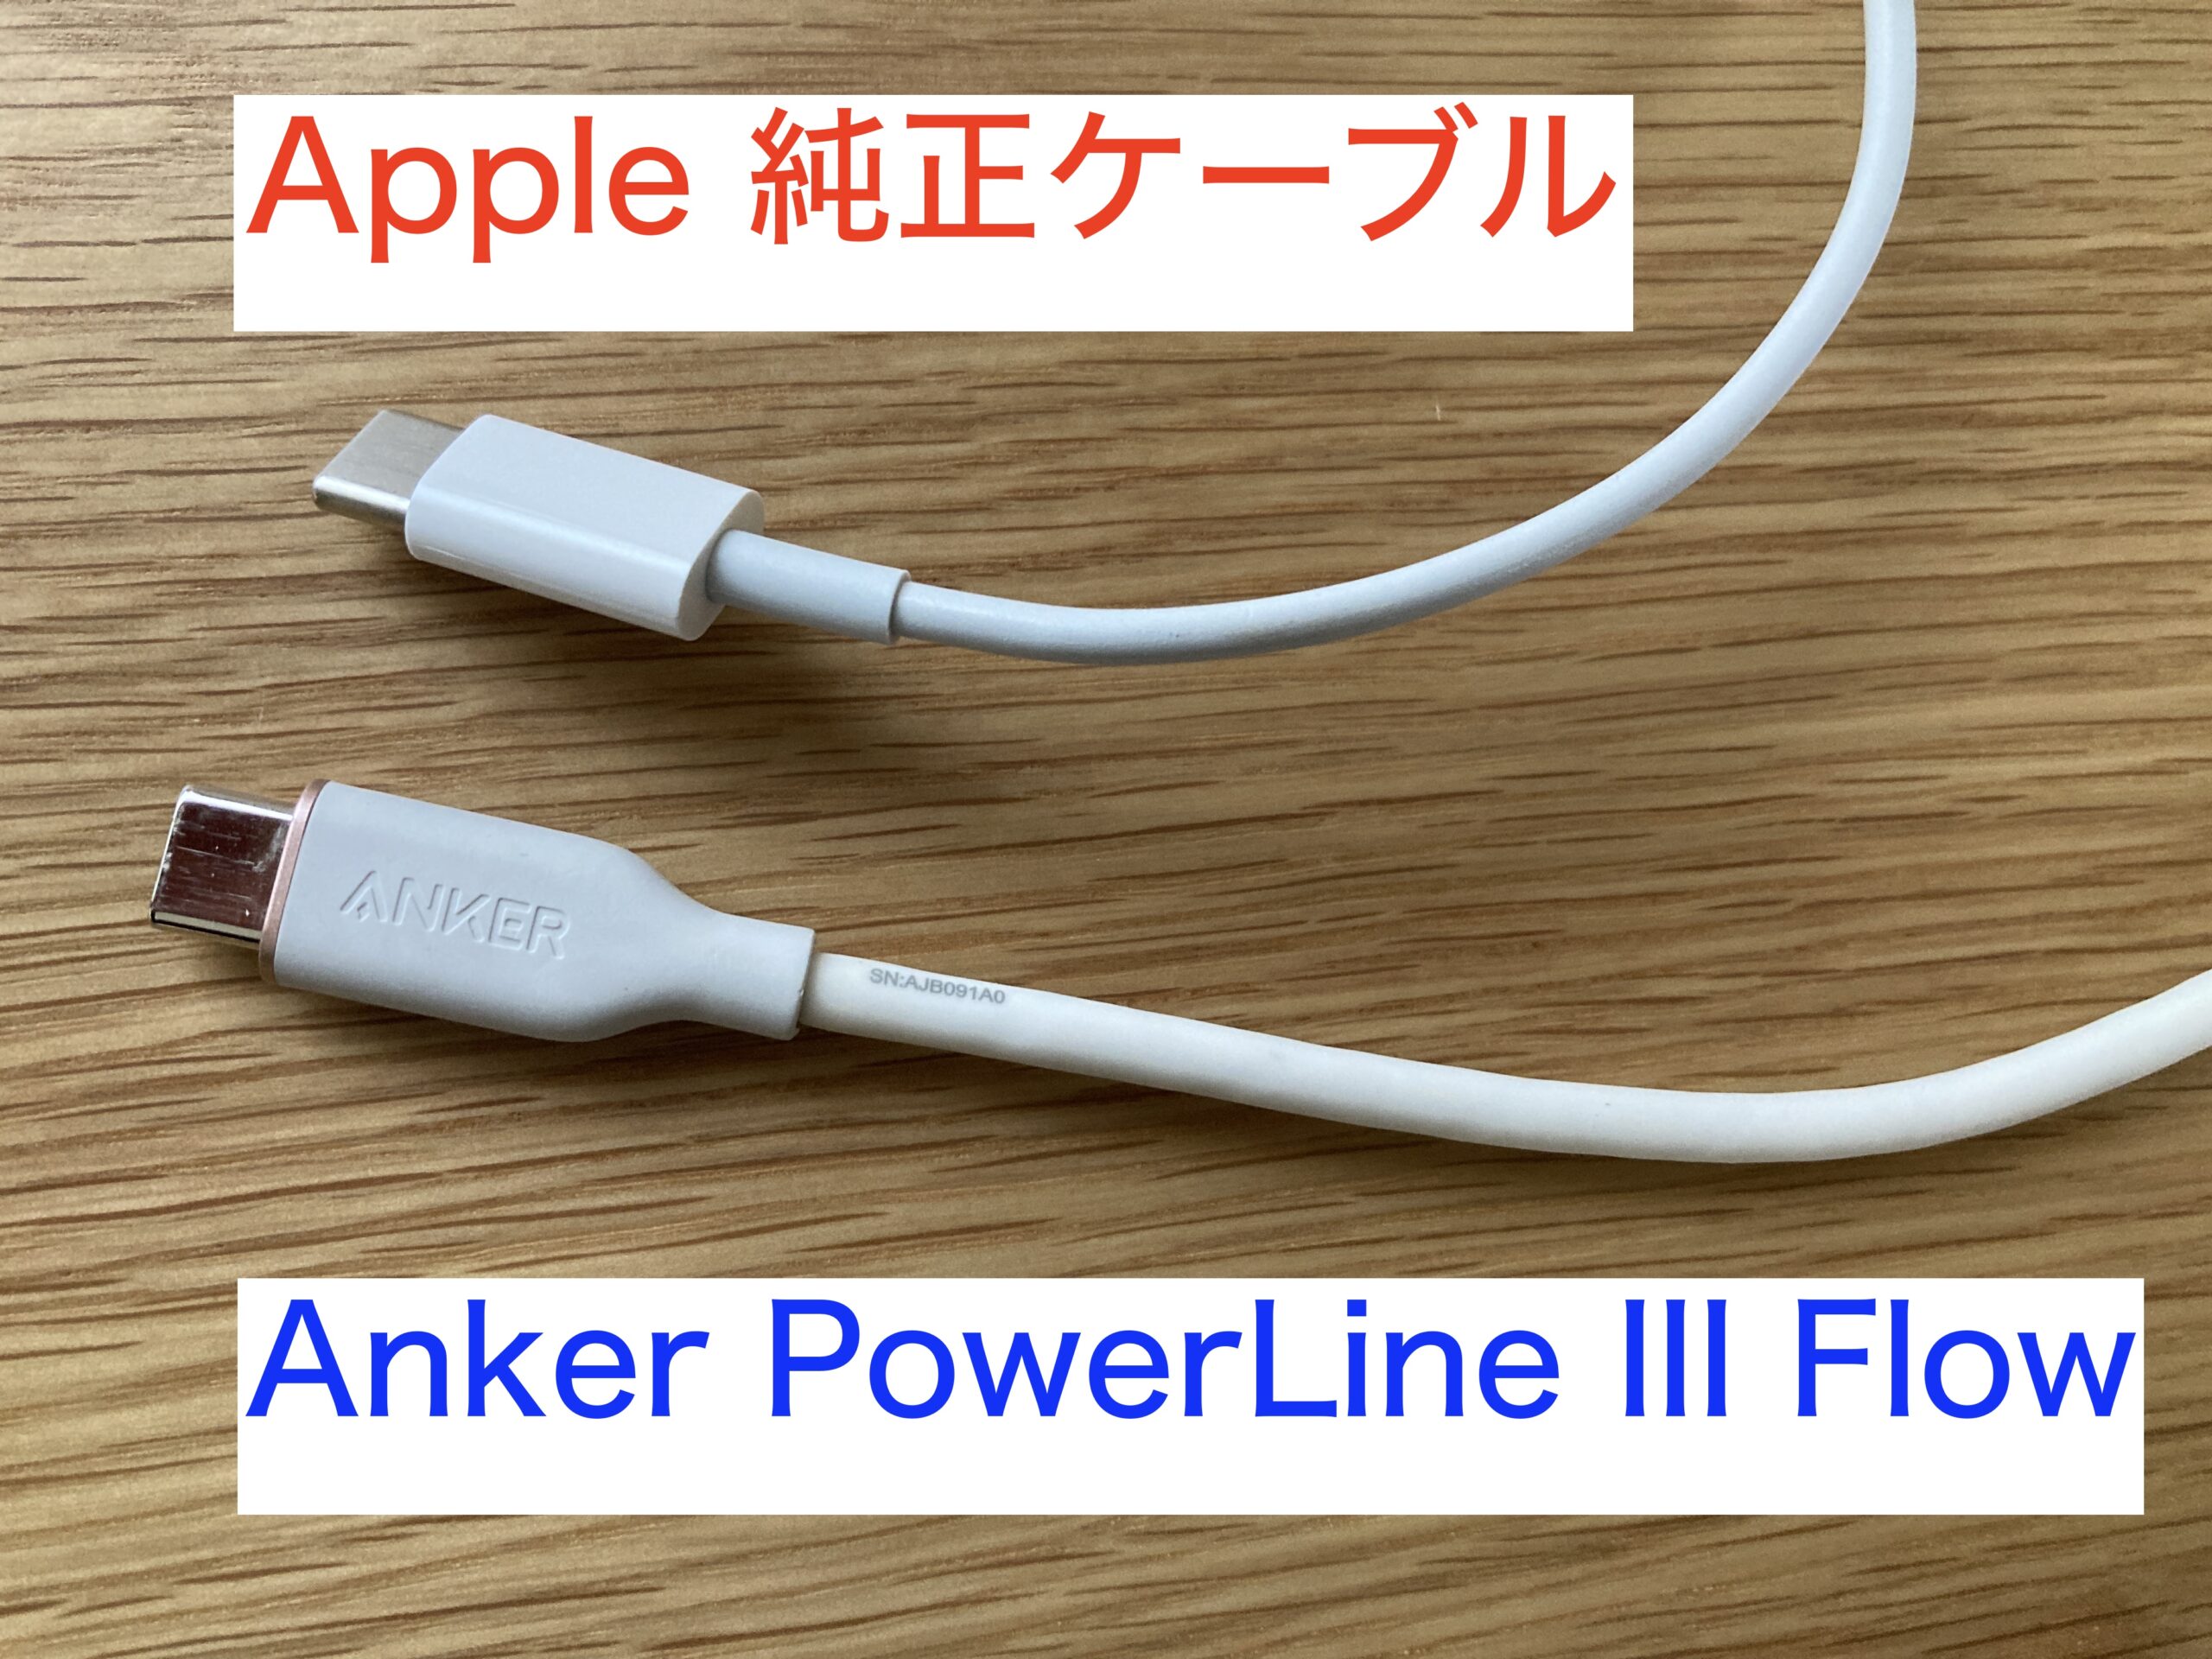 激安本物 Anker PowerLine III Flow USB-C ライトニング ケーブル MFi認証 アンカー USB PD対応 iPhone  0.9m